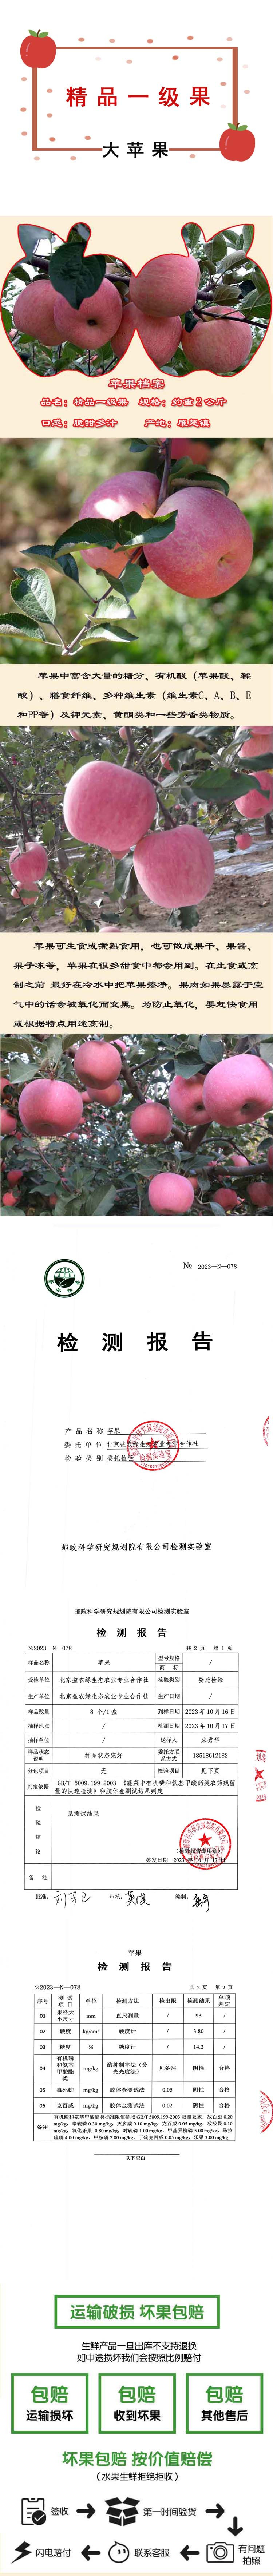  邮政农品 【北京馆】门头沟雁翅红苹果精品一级果2KG